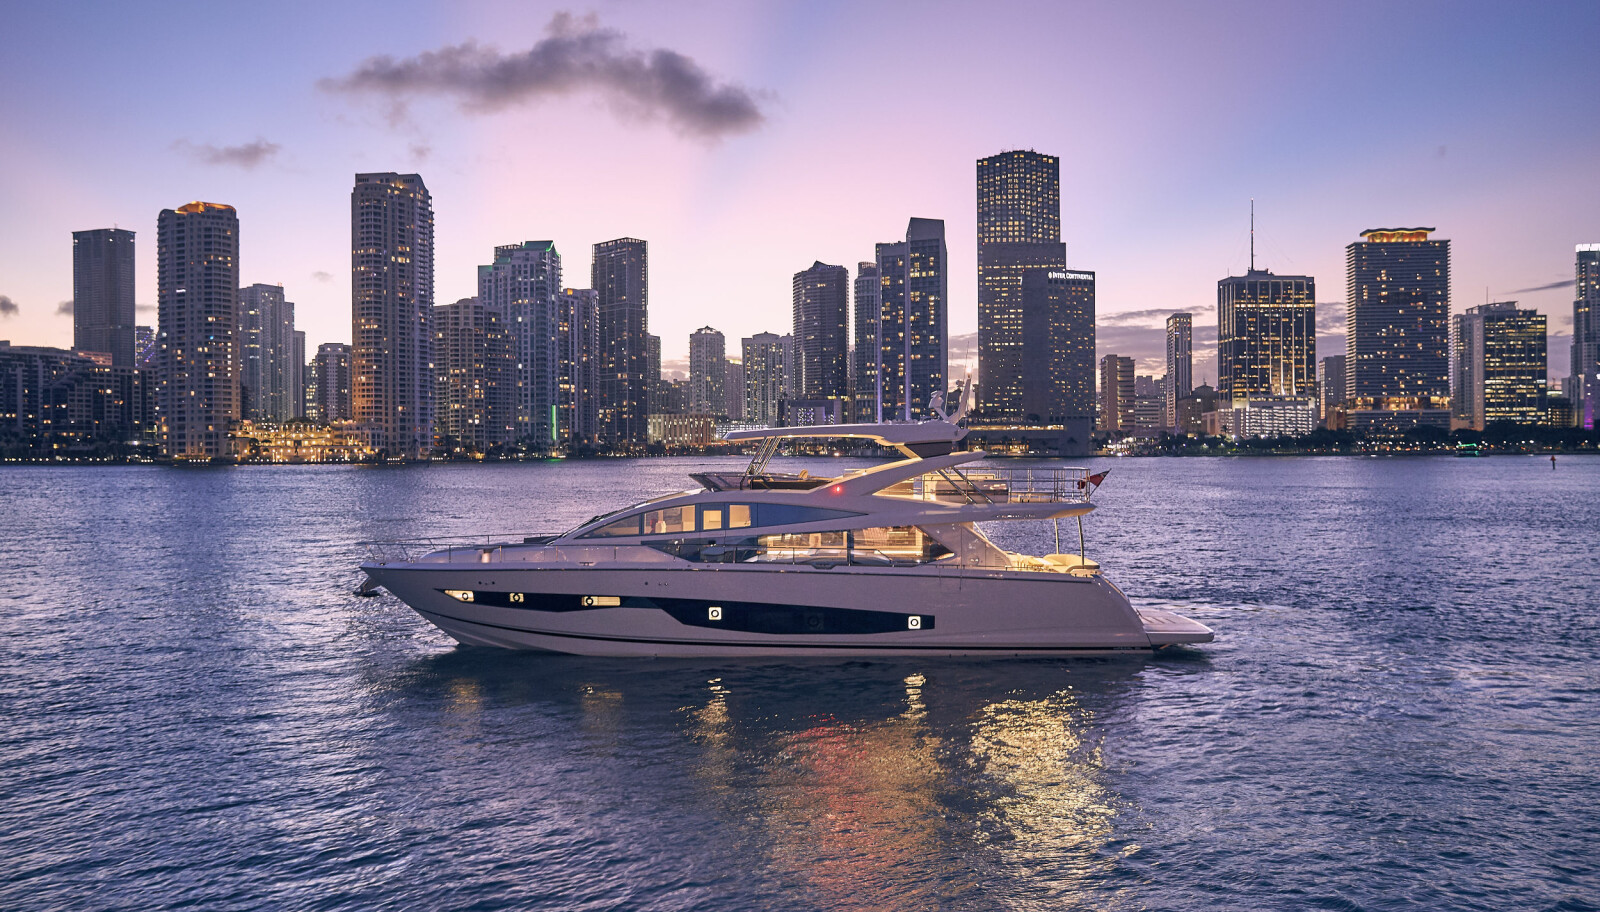 KVELD: En viktig del av yachtdesign er å få båten til å virke imponerende også når solen har gått ned.